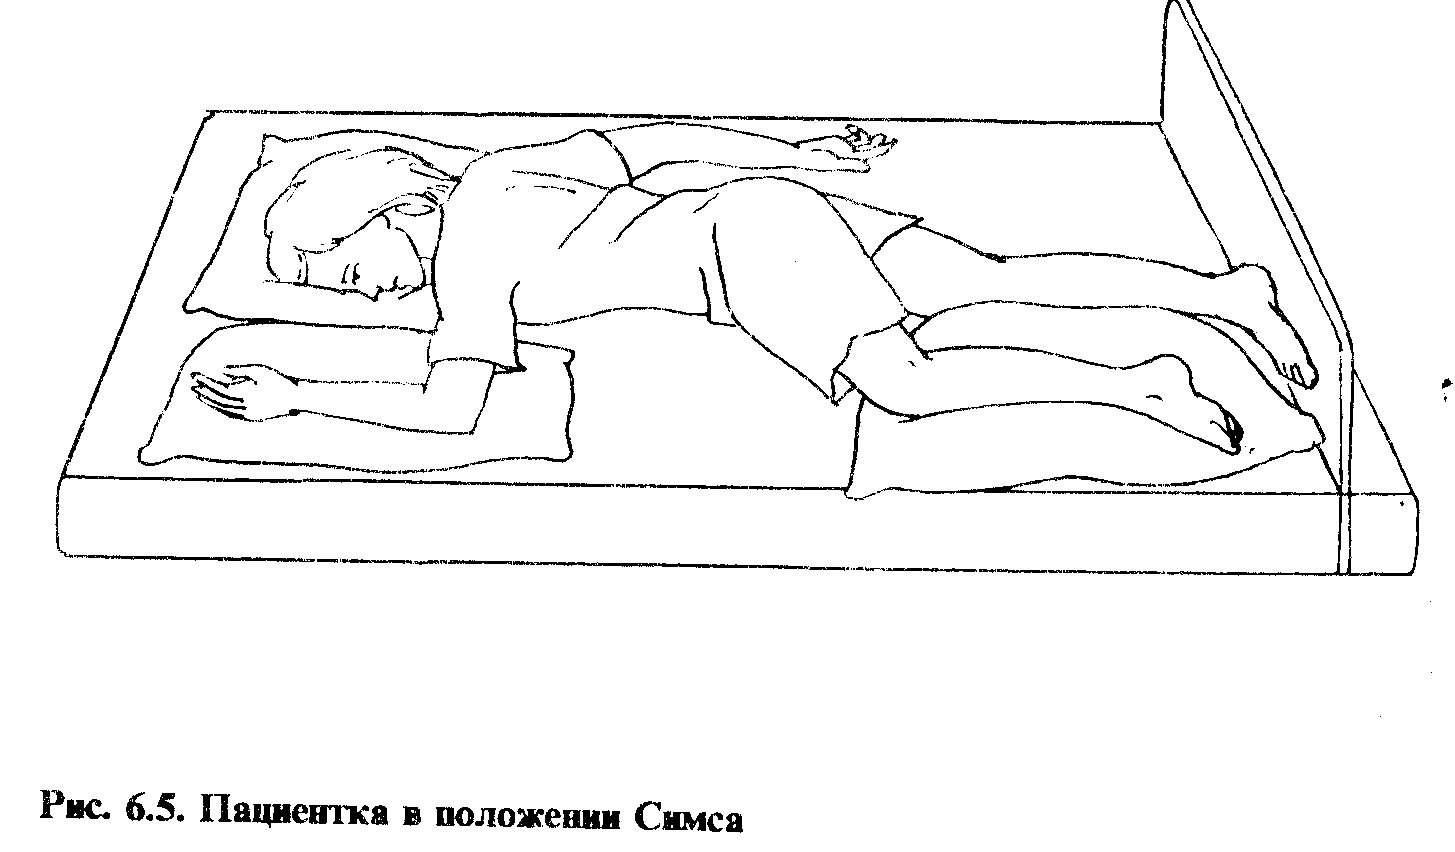 основные виды положения больного в кровати